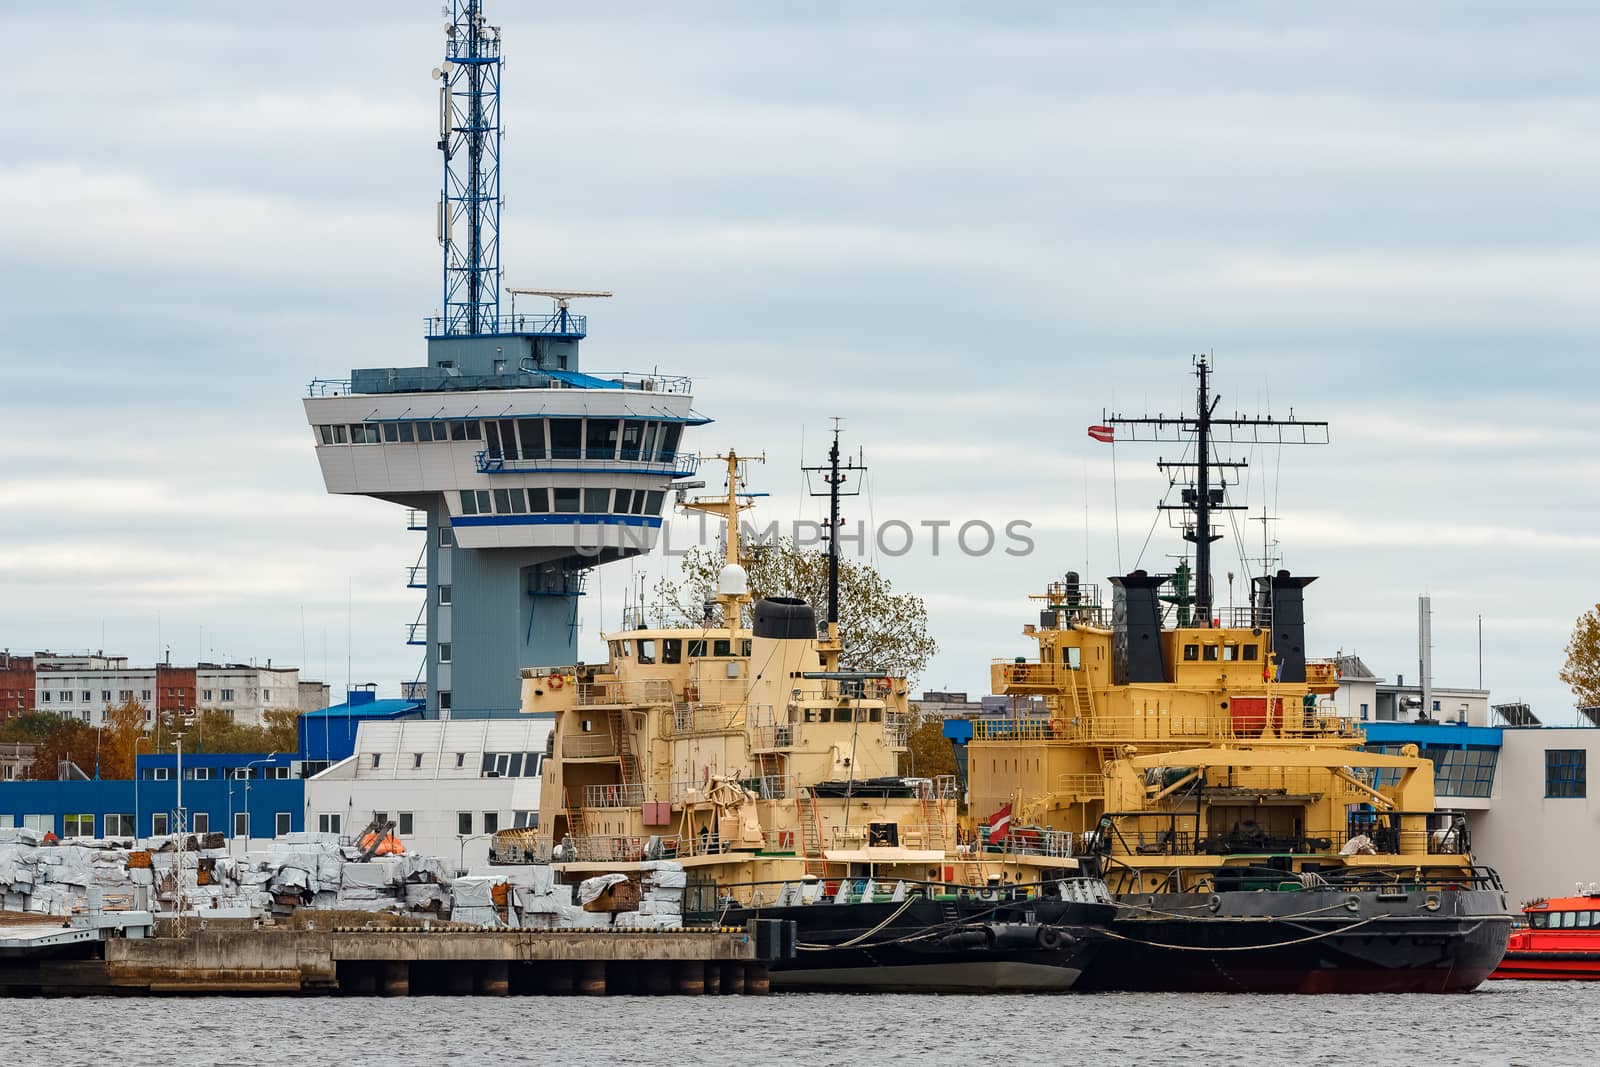 Yellow icebreakers moored by sengnsp